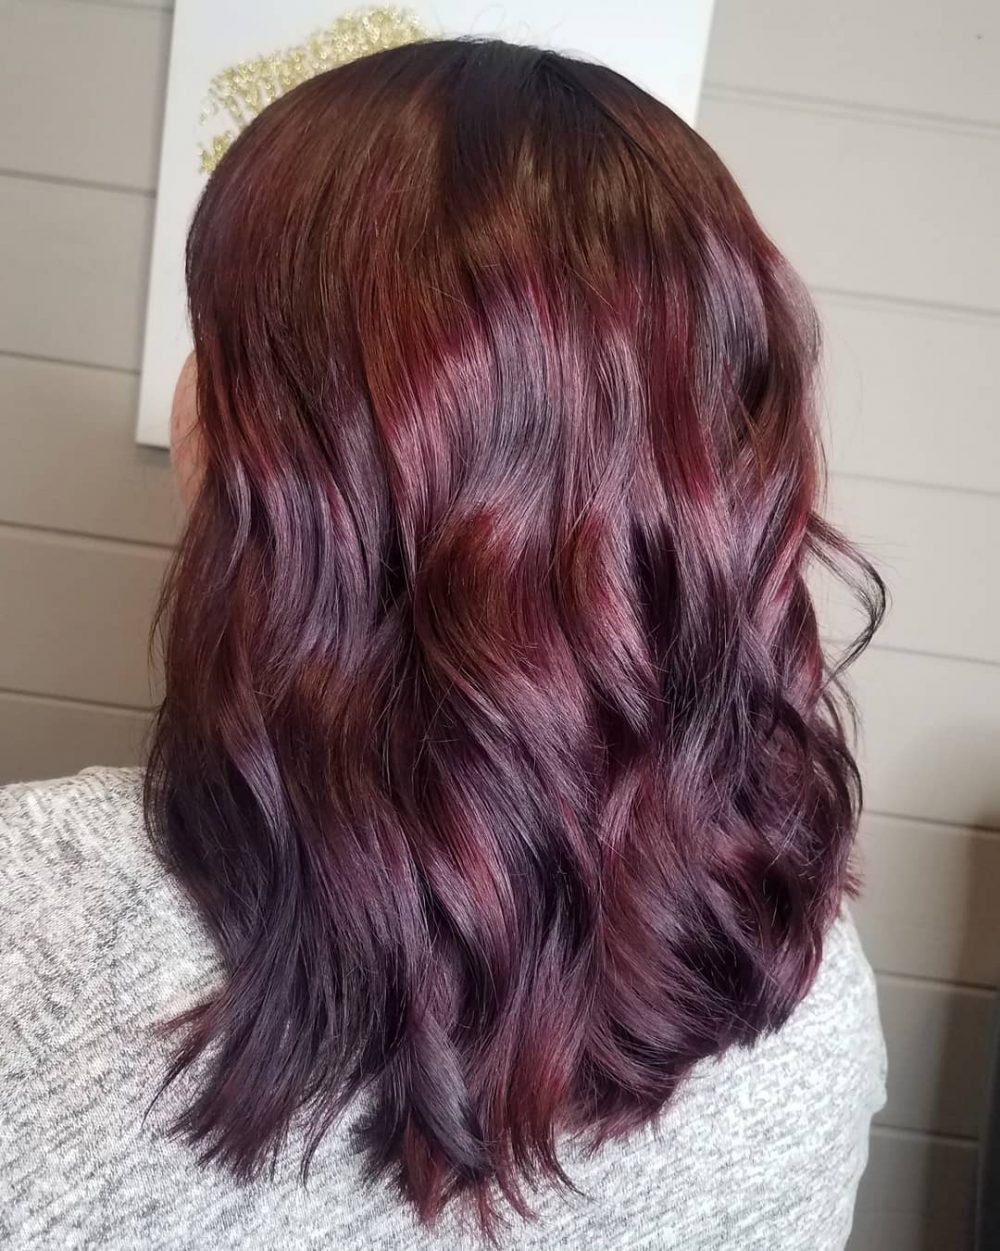 Glowing Deep Maroon Red Burgundy Hair